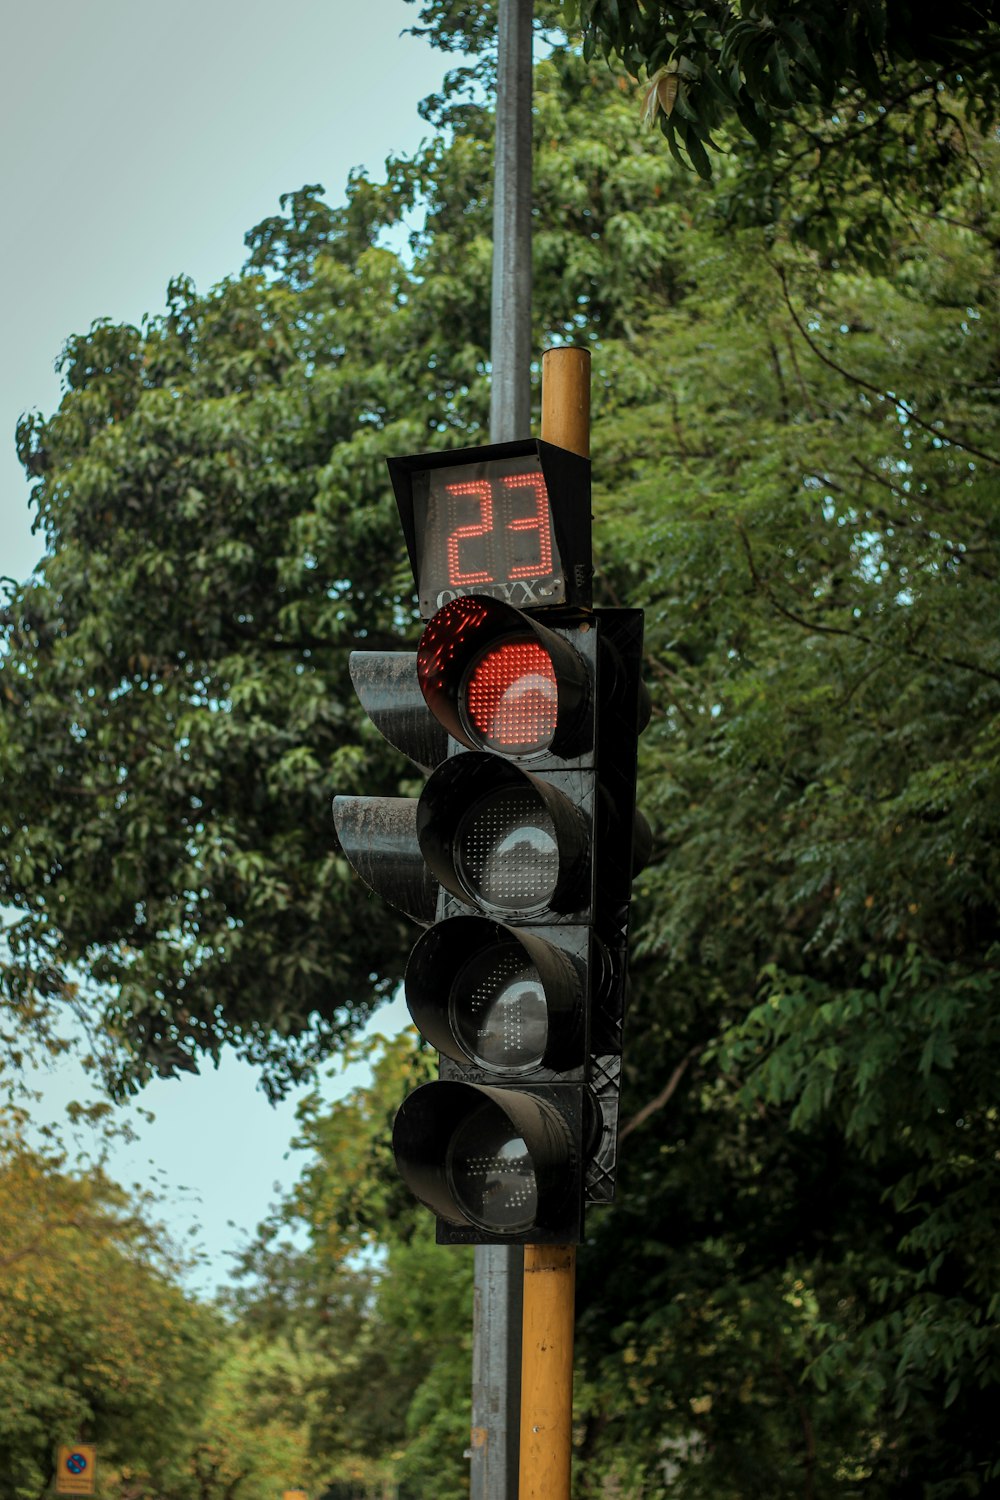 Un semáforo en un poste con árboles al fondo